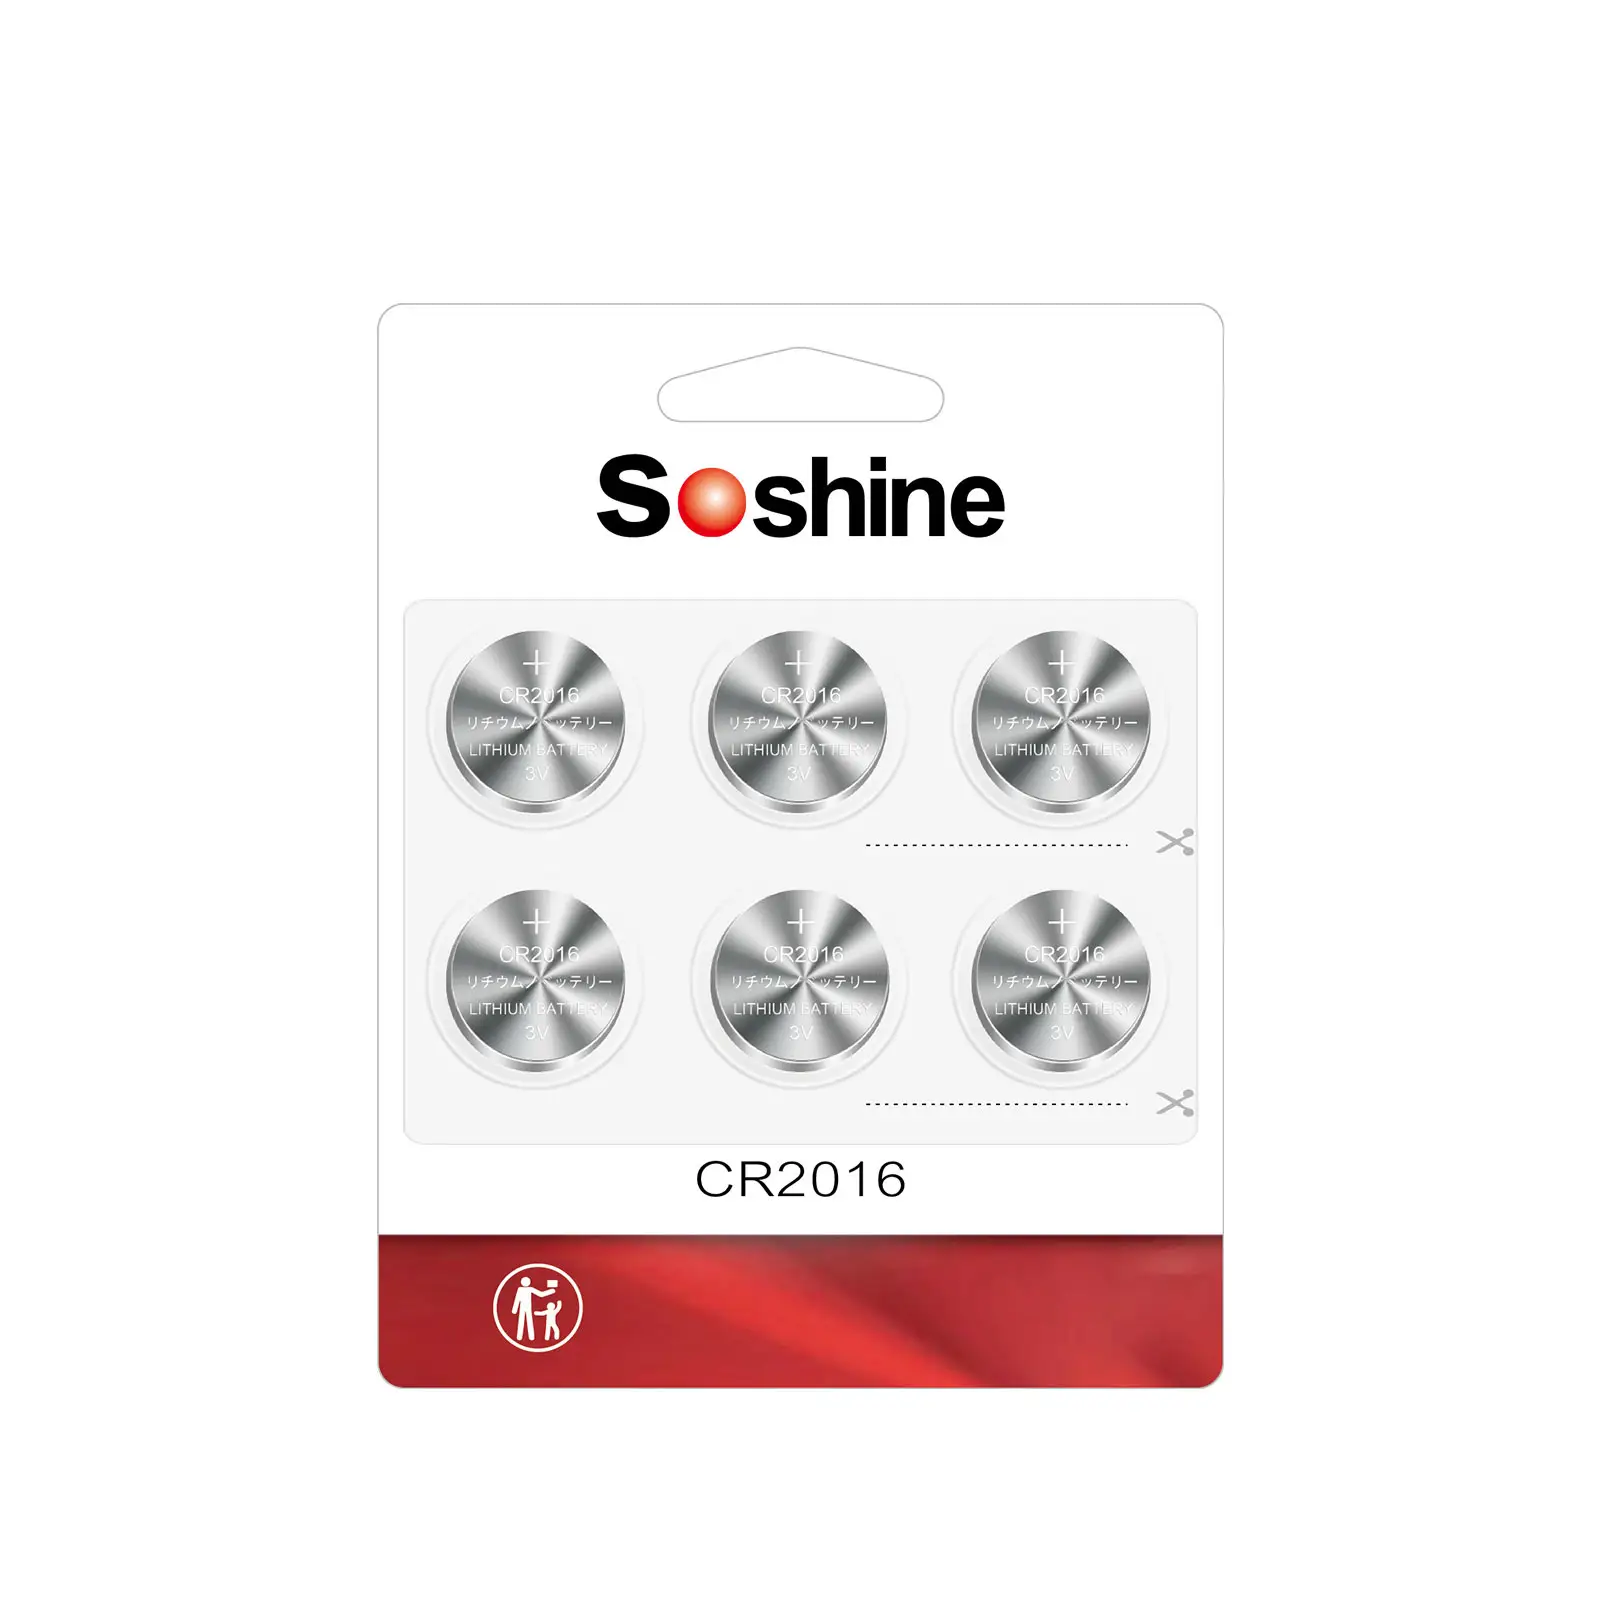 Soshine-paquete de 6 pilas de litio, 3 voltios, CR2016